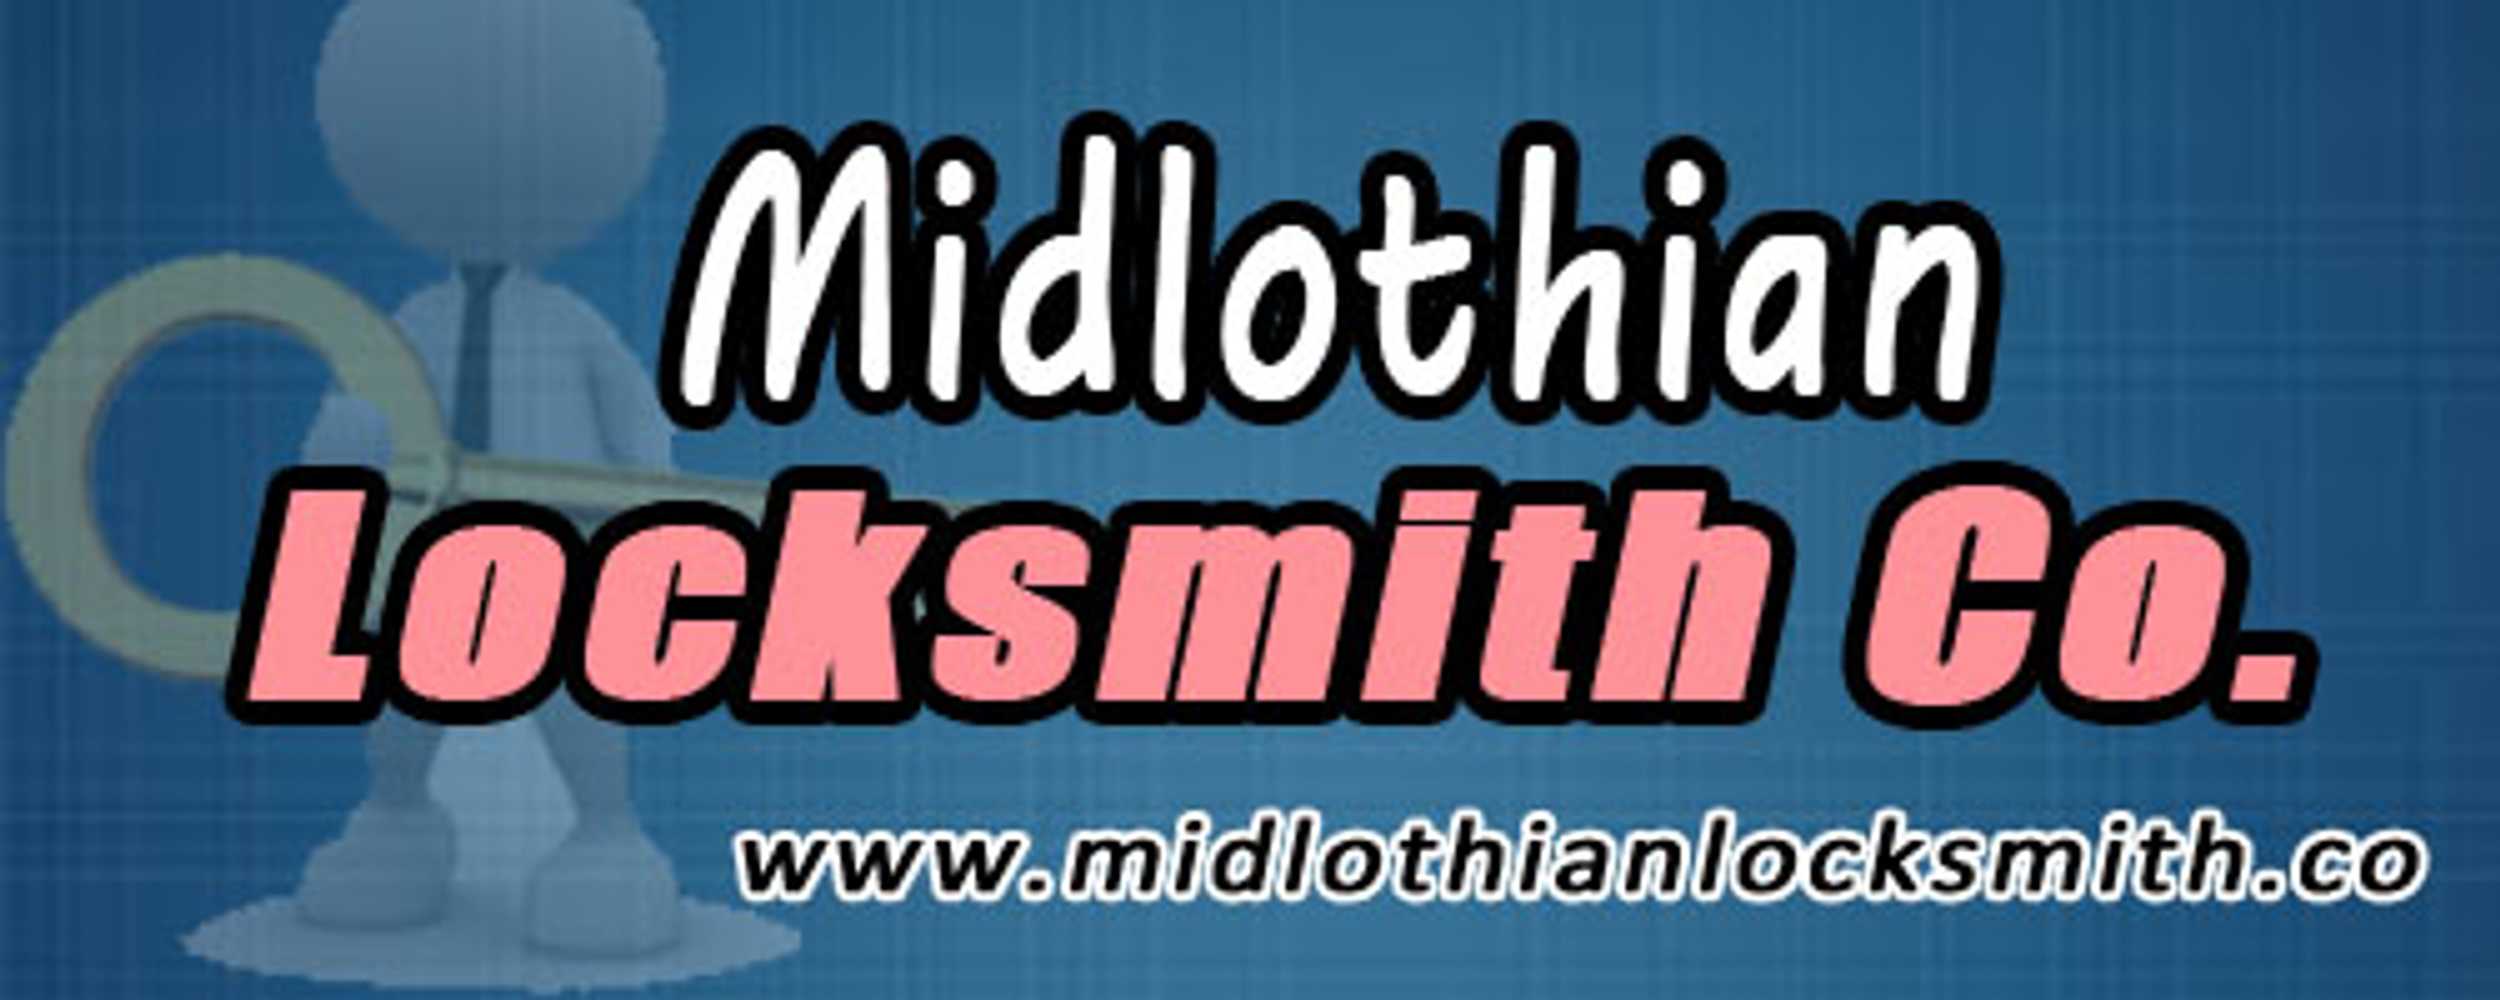 Midlothian Locksmiths Co.